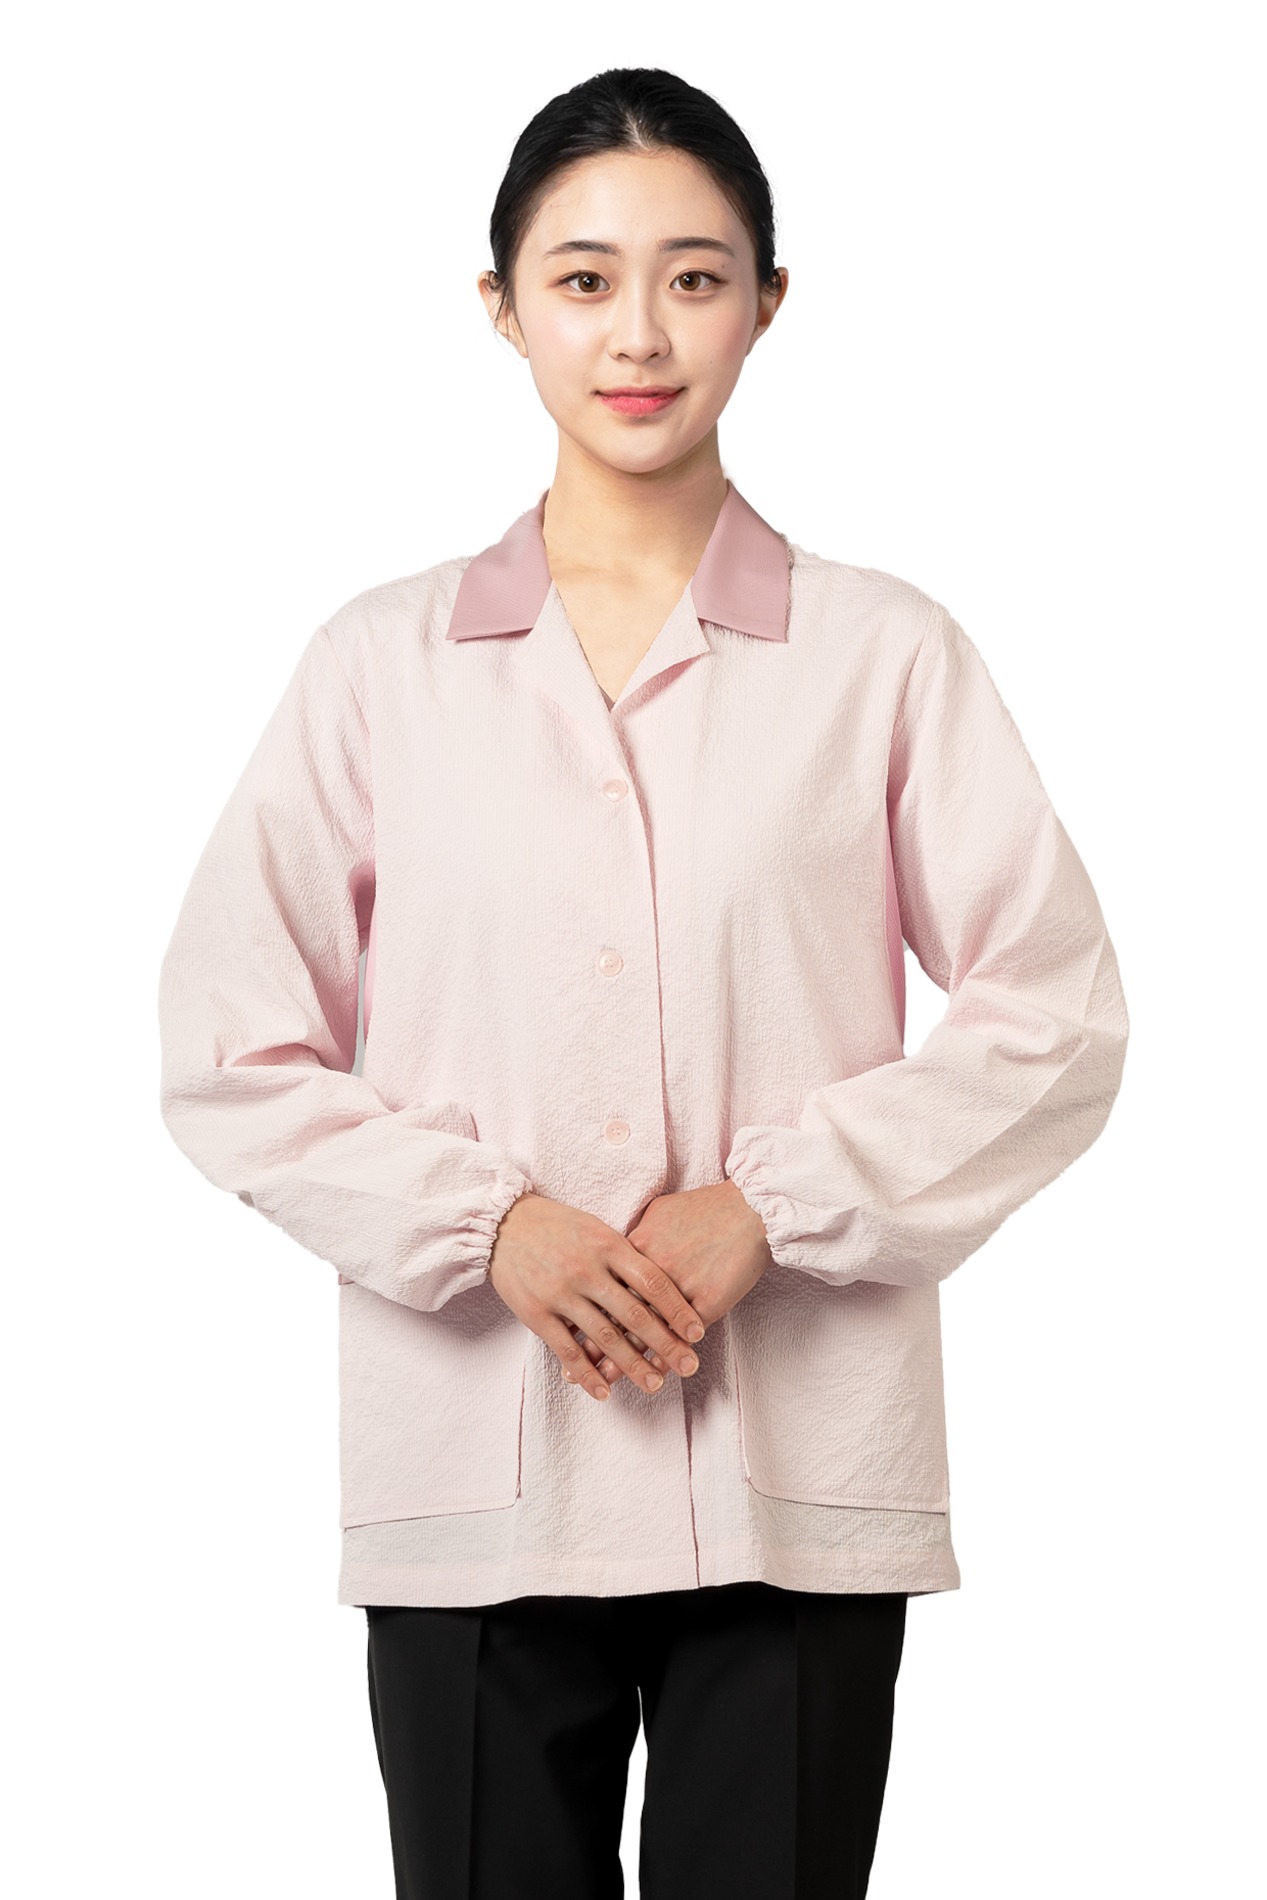 YJ018 - 메쉬배색주방복(핑크)